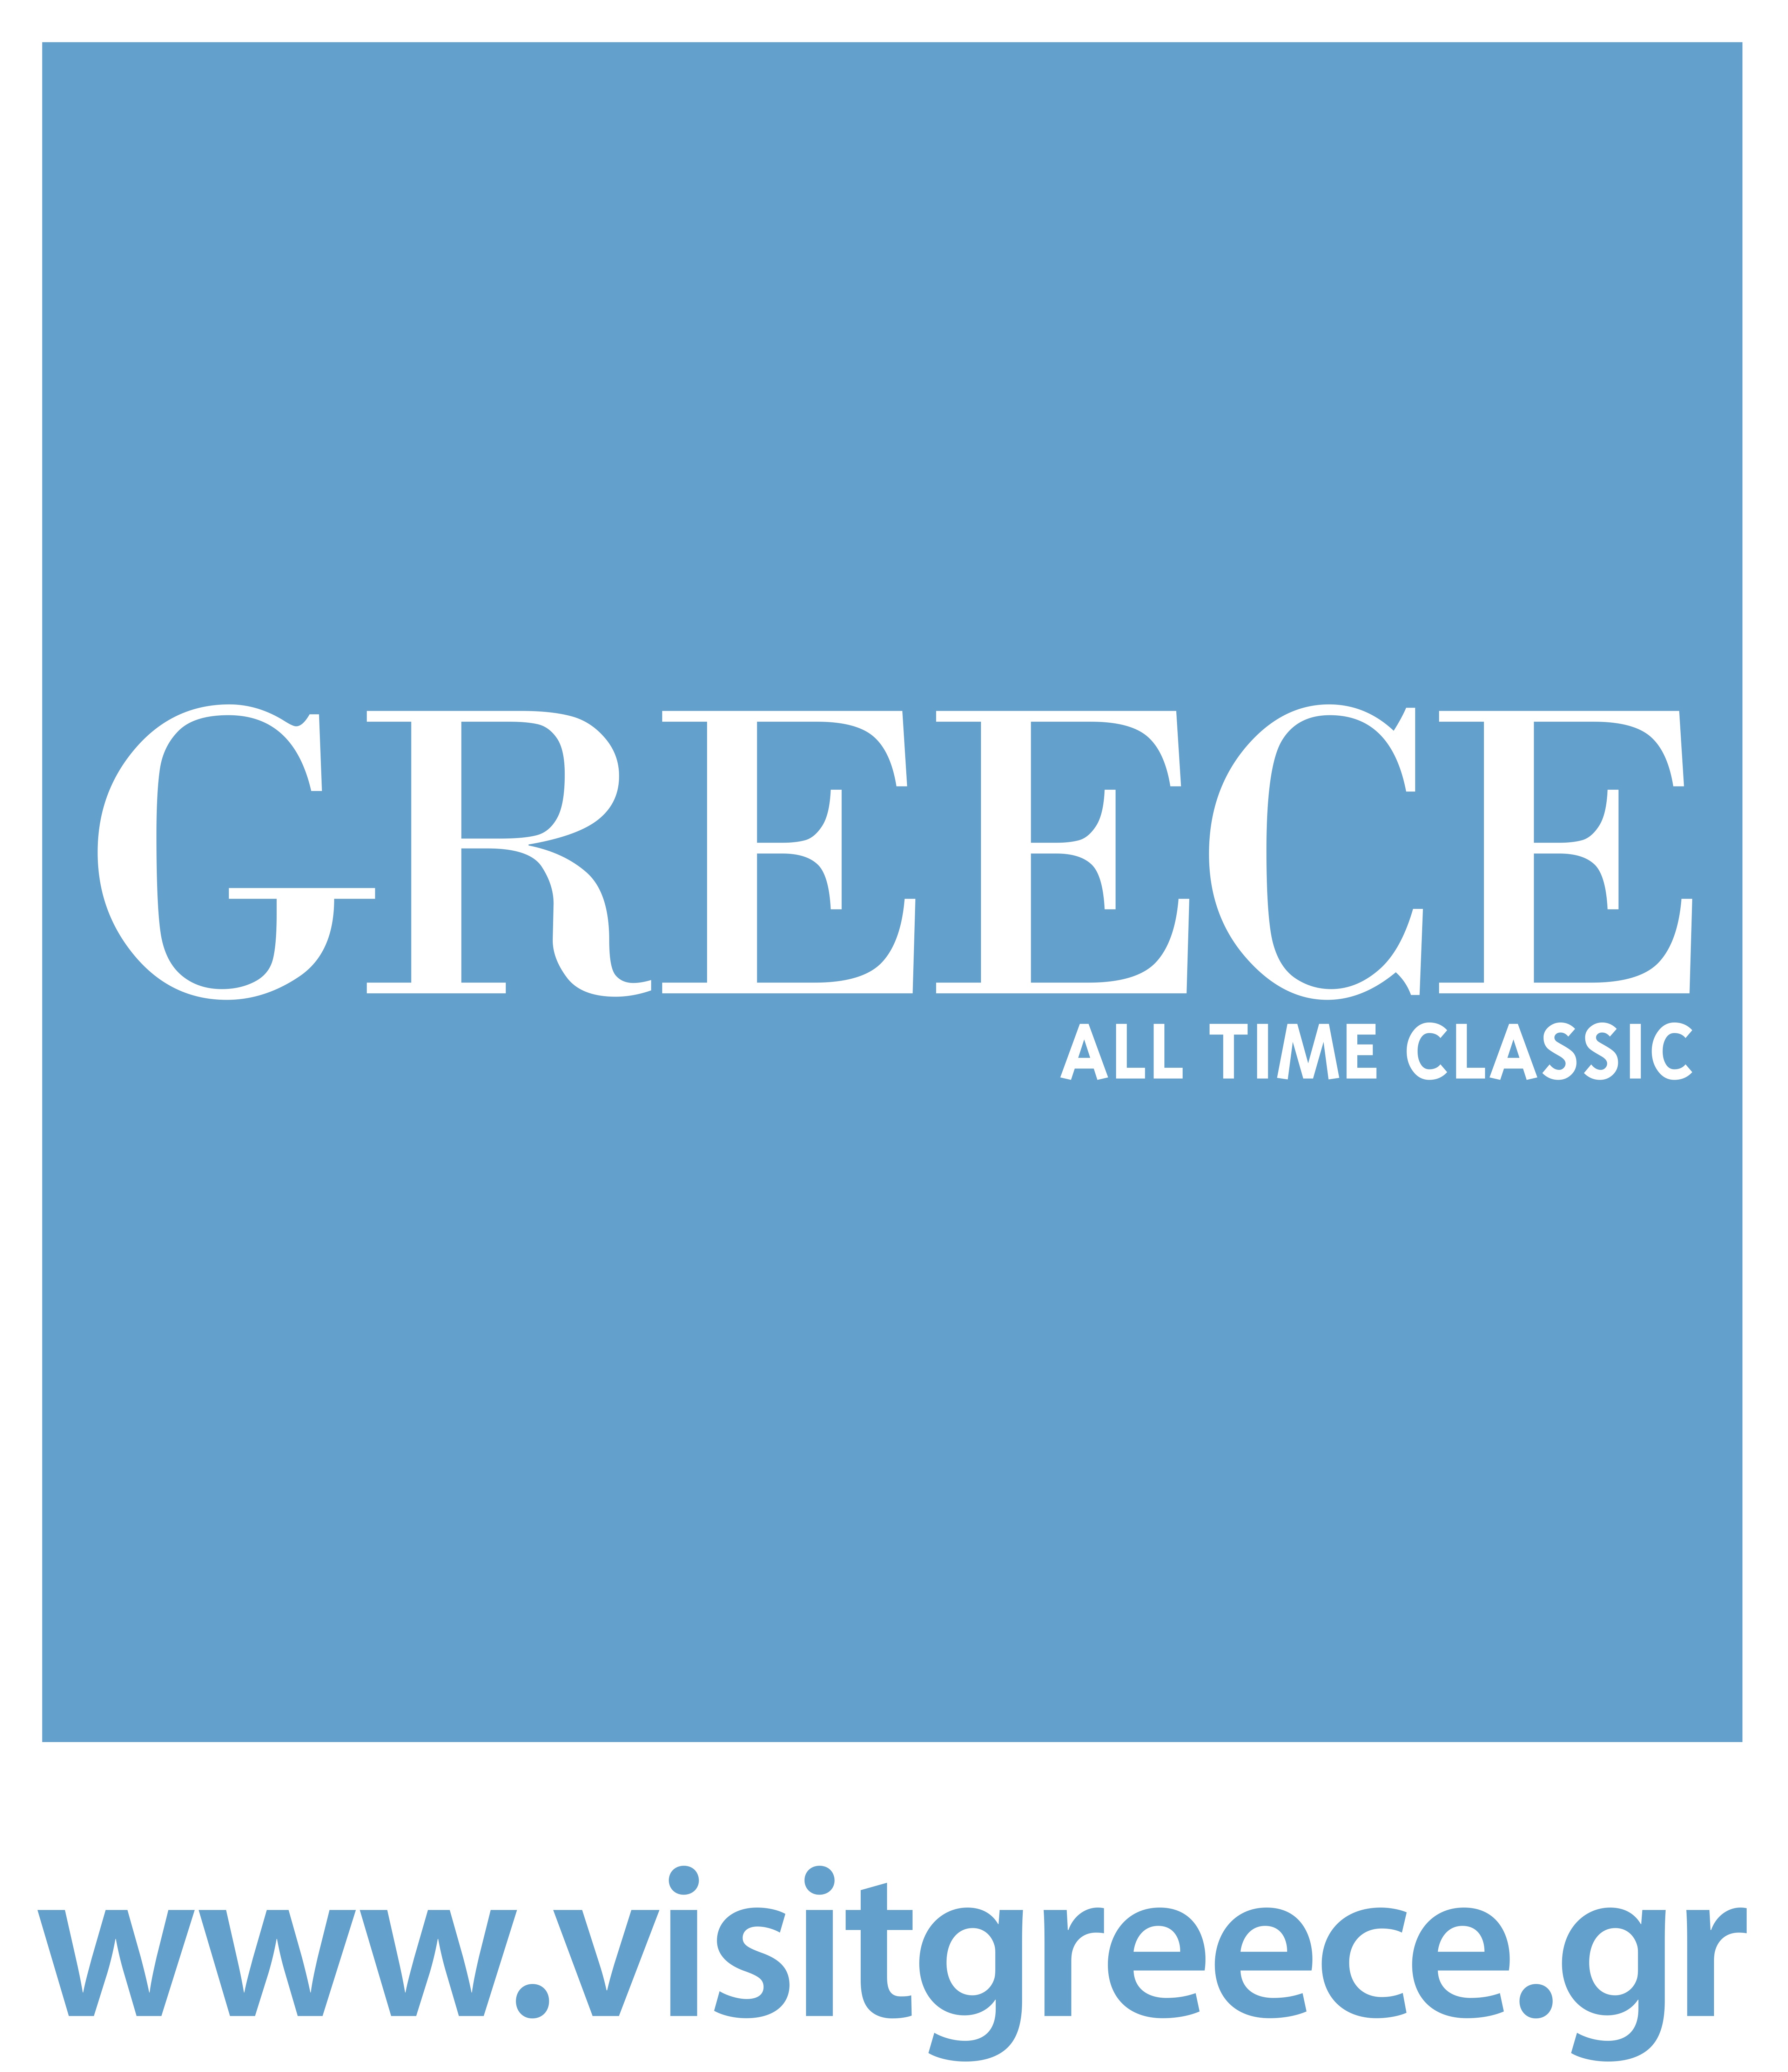 LOGO_greece_alltimeclassic_visitgreece (2) copy